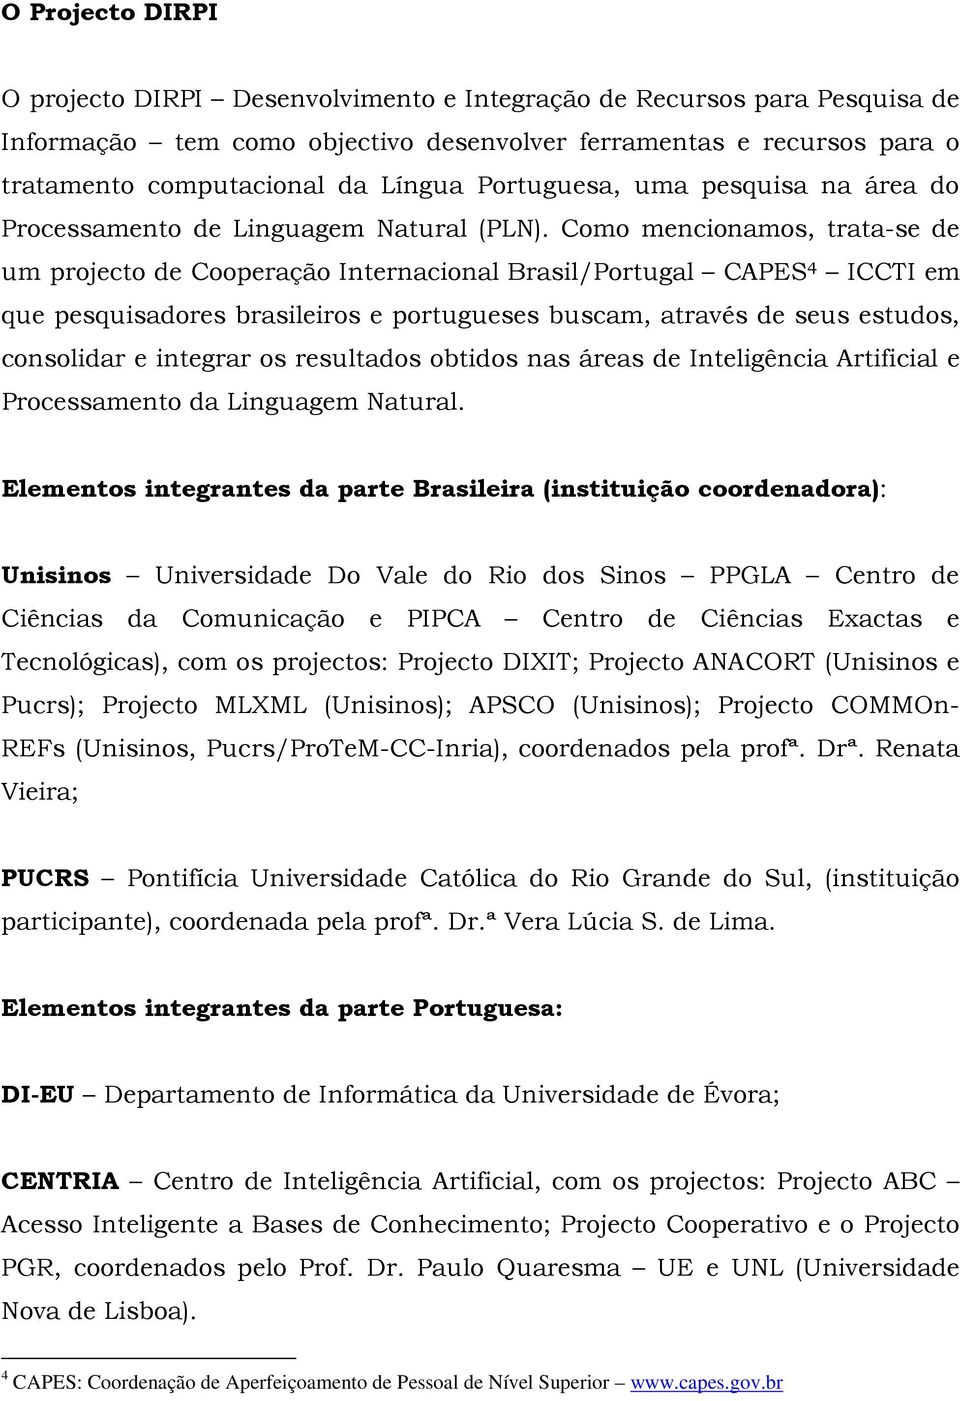 Como mencionamos, trata-se de um projecto de Cooperação Internacional Brasil/Portugal CAPES 4 ICCTI em que pesquisadores brasileiros e portugueses buscam, através de seus estudos, consolidar e